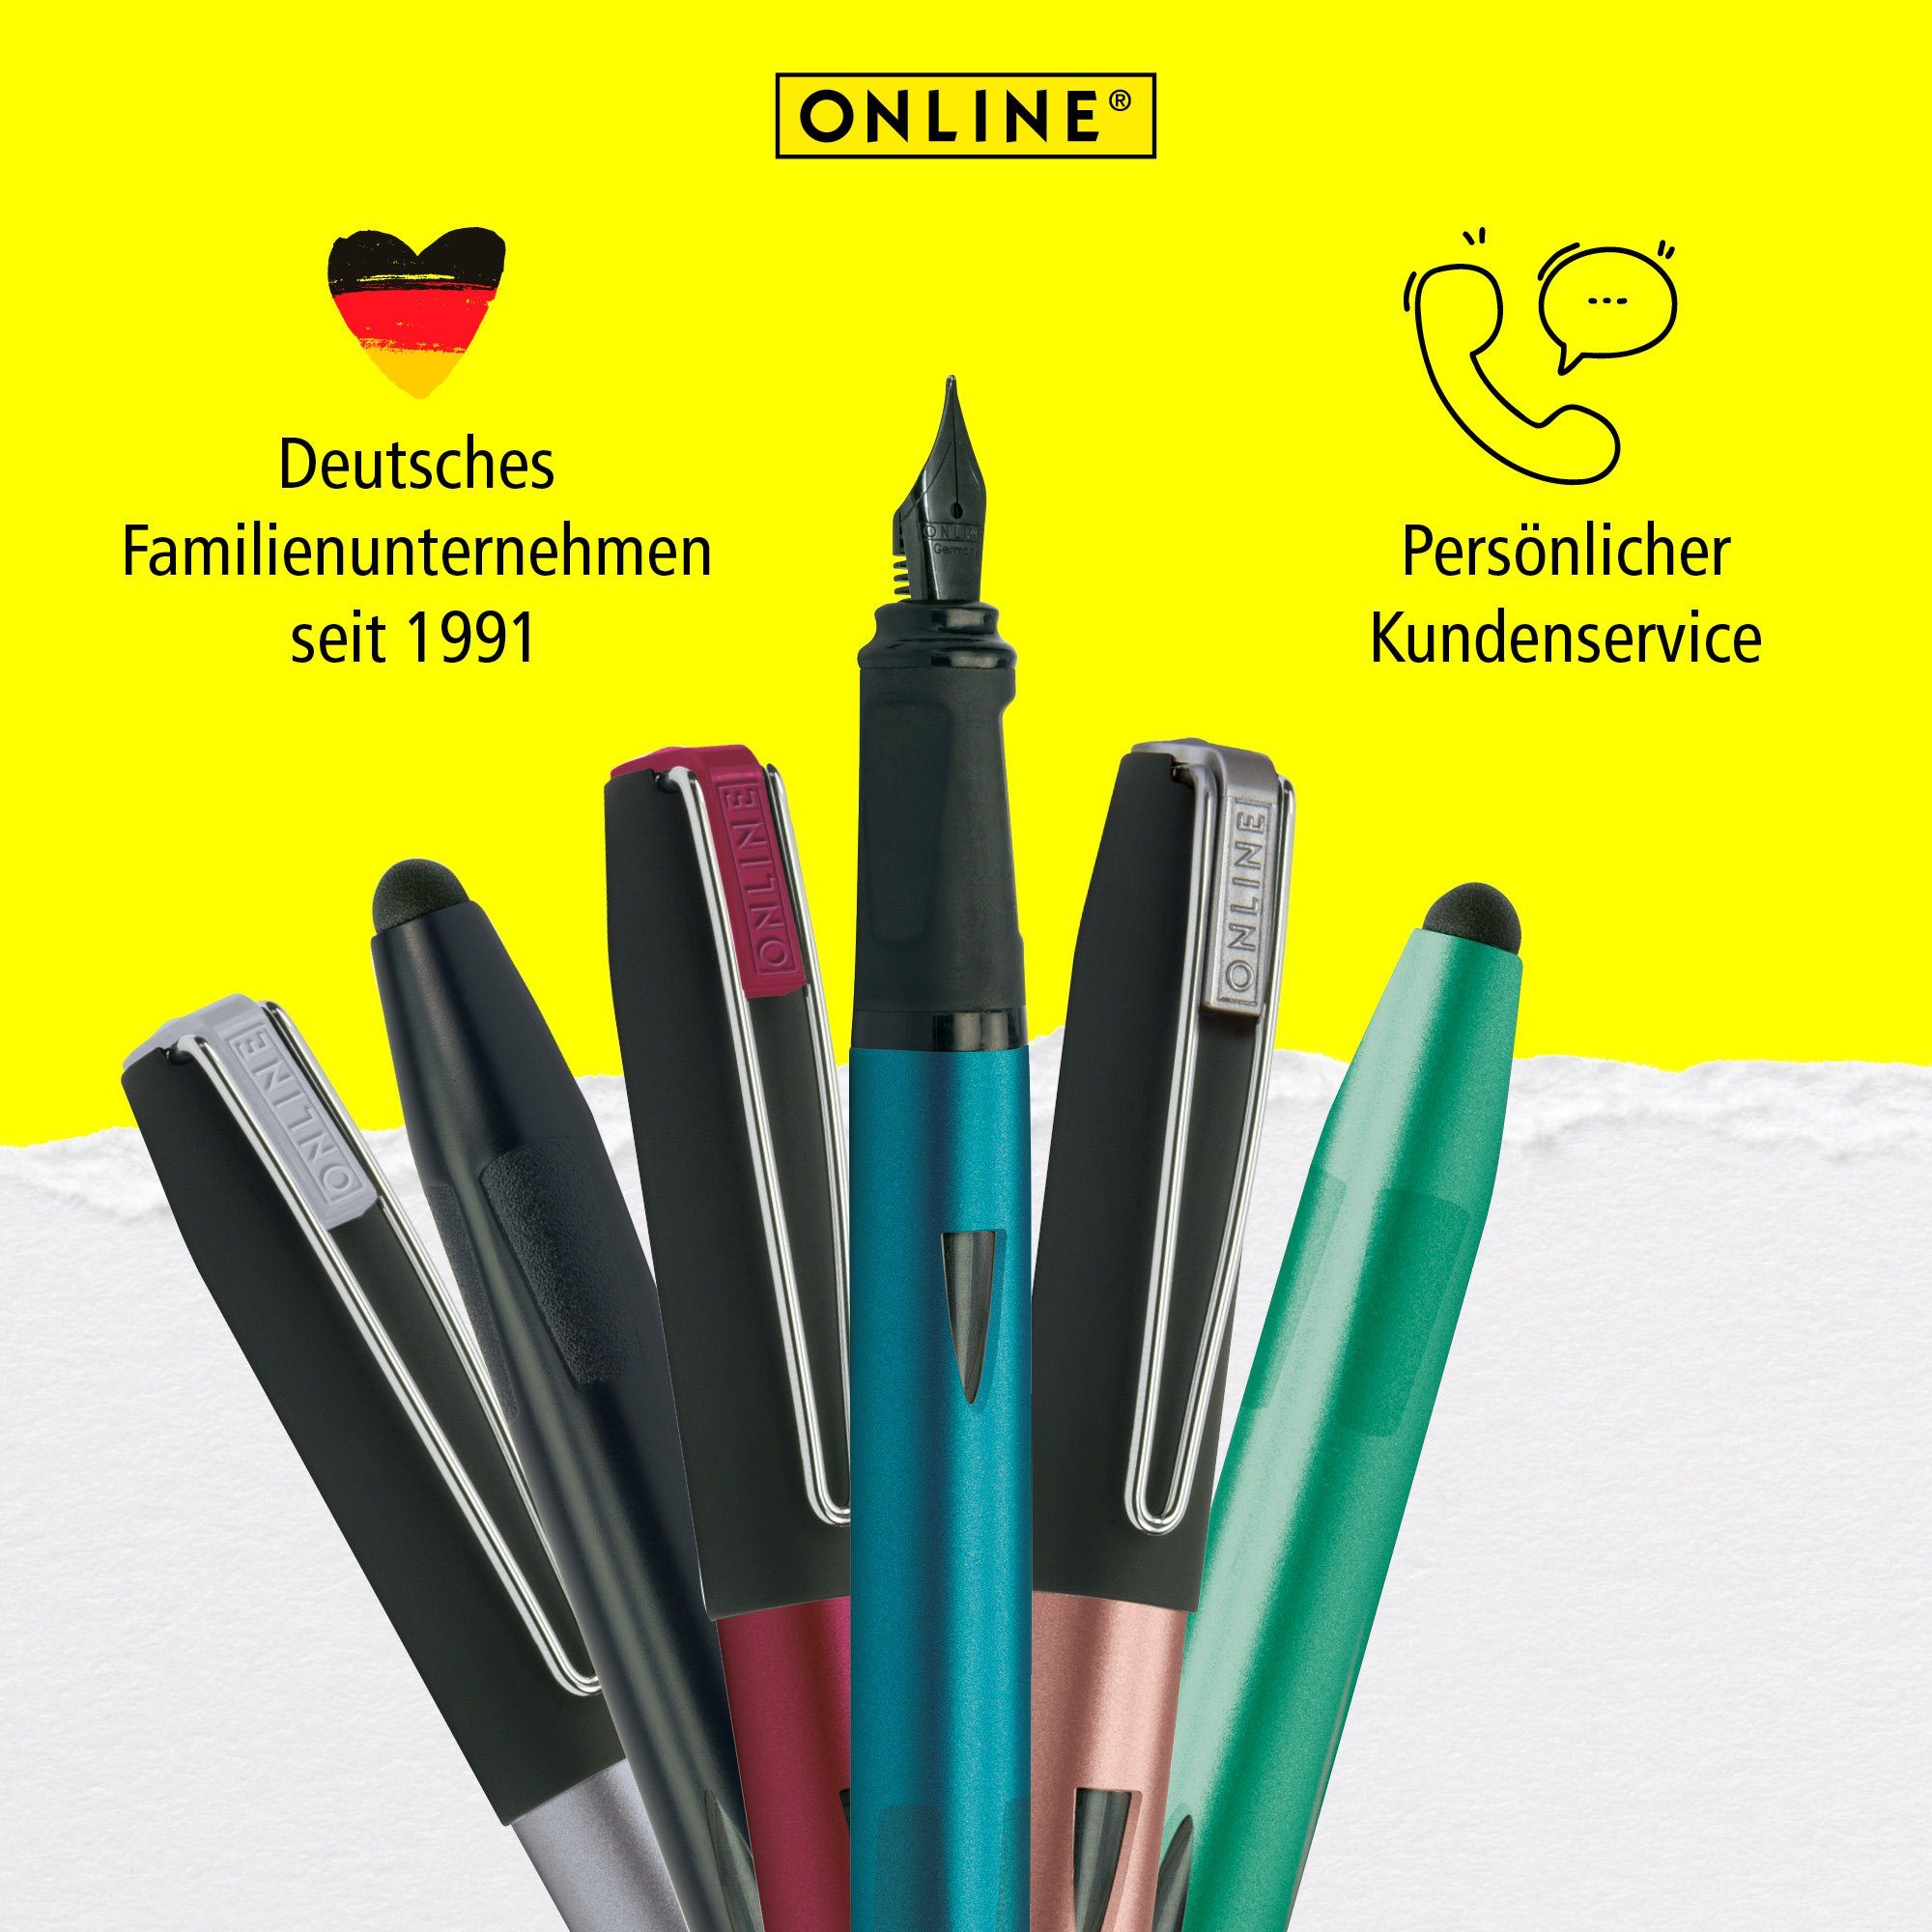 Schule, ideal für Füller ergonomisch, Pen die Online Plus, mit Rosegold Switch Stylus-Tip